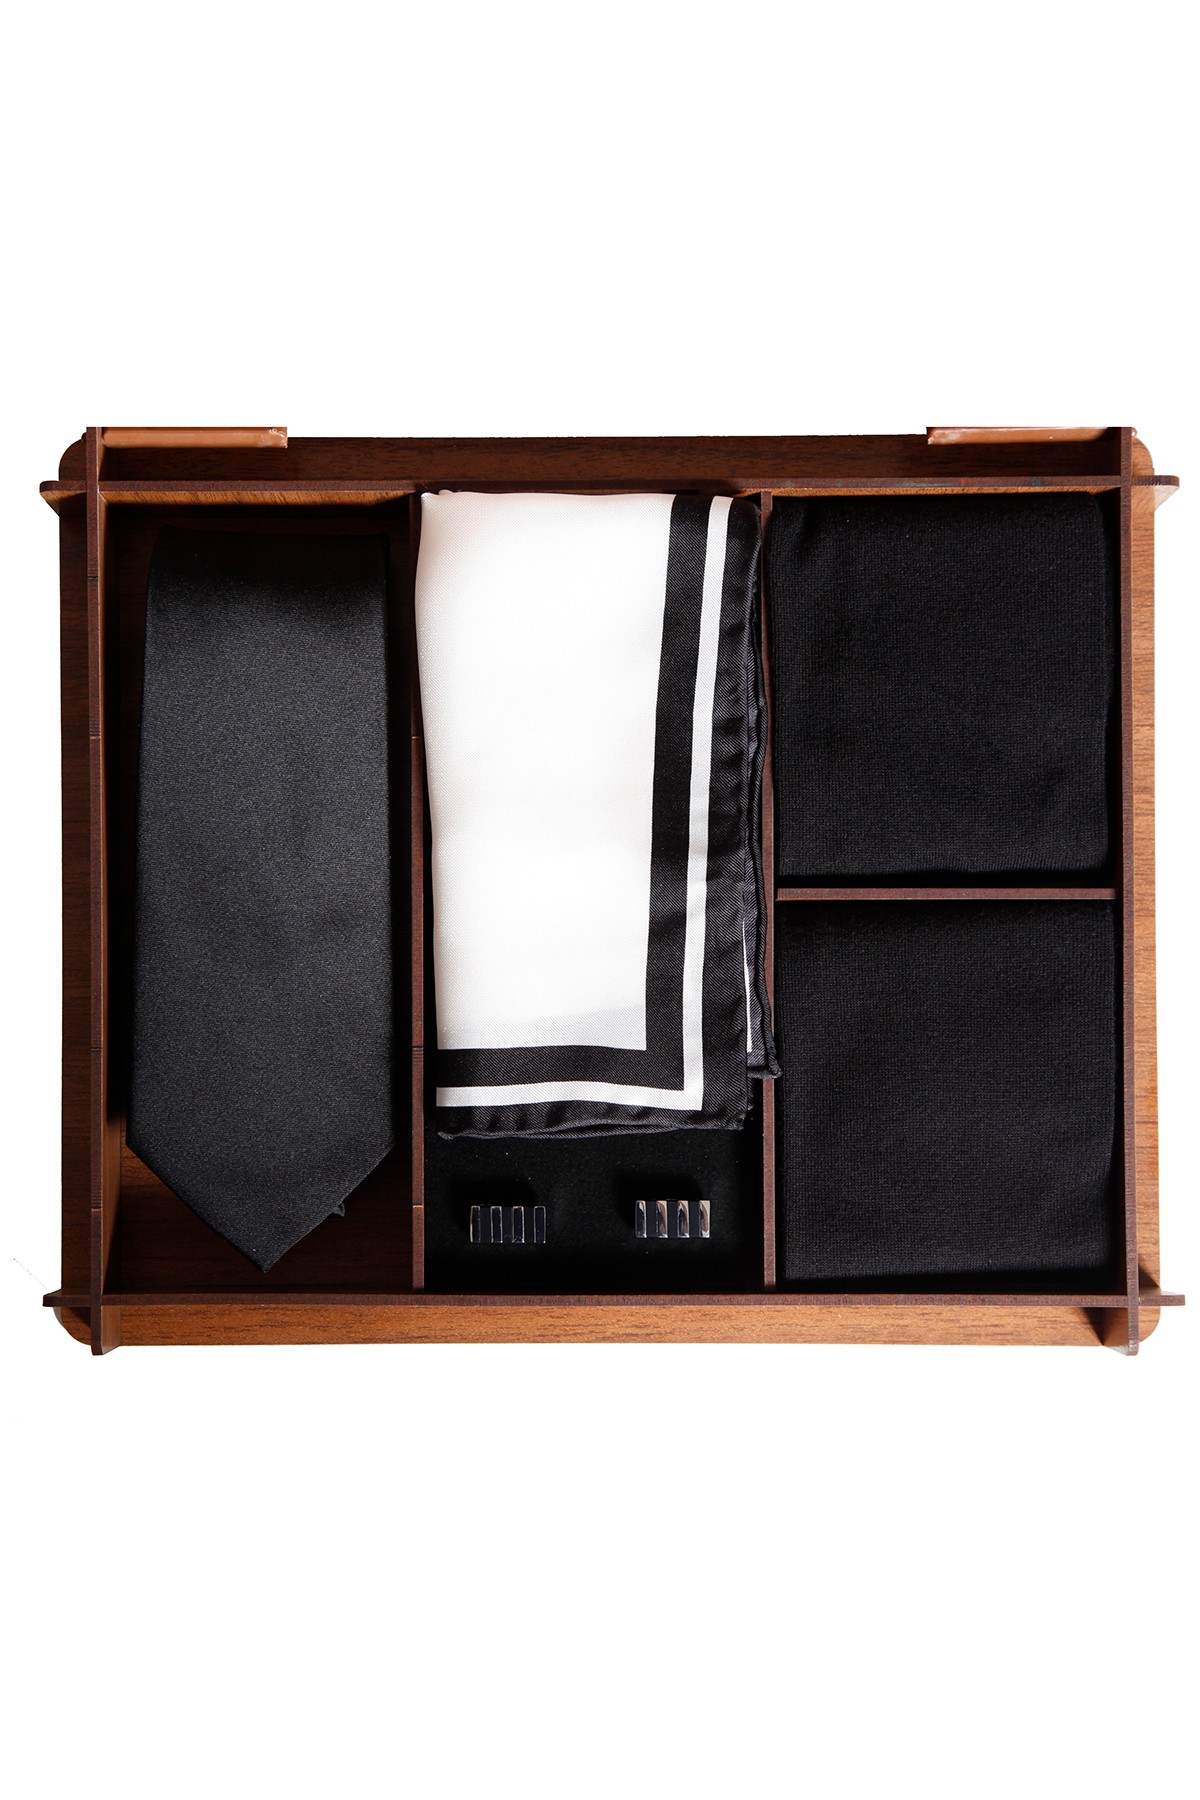 Ahşap kutuda modern ipek kravatlı erkek hediye seti